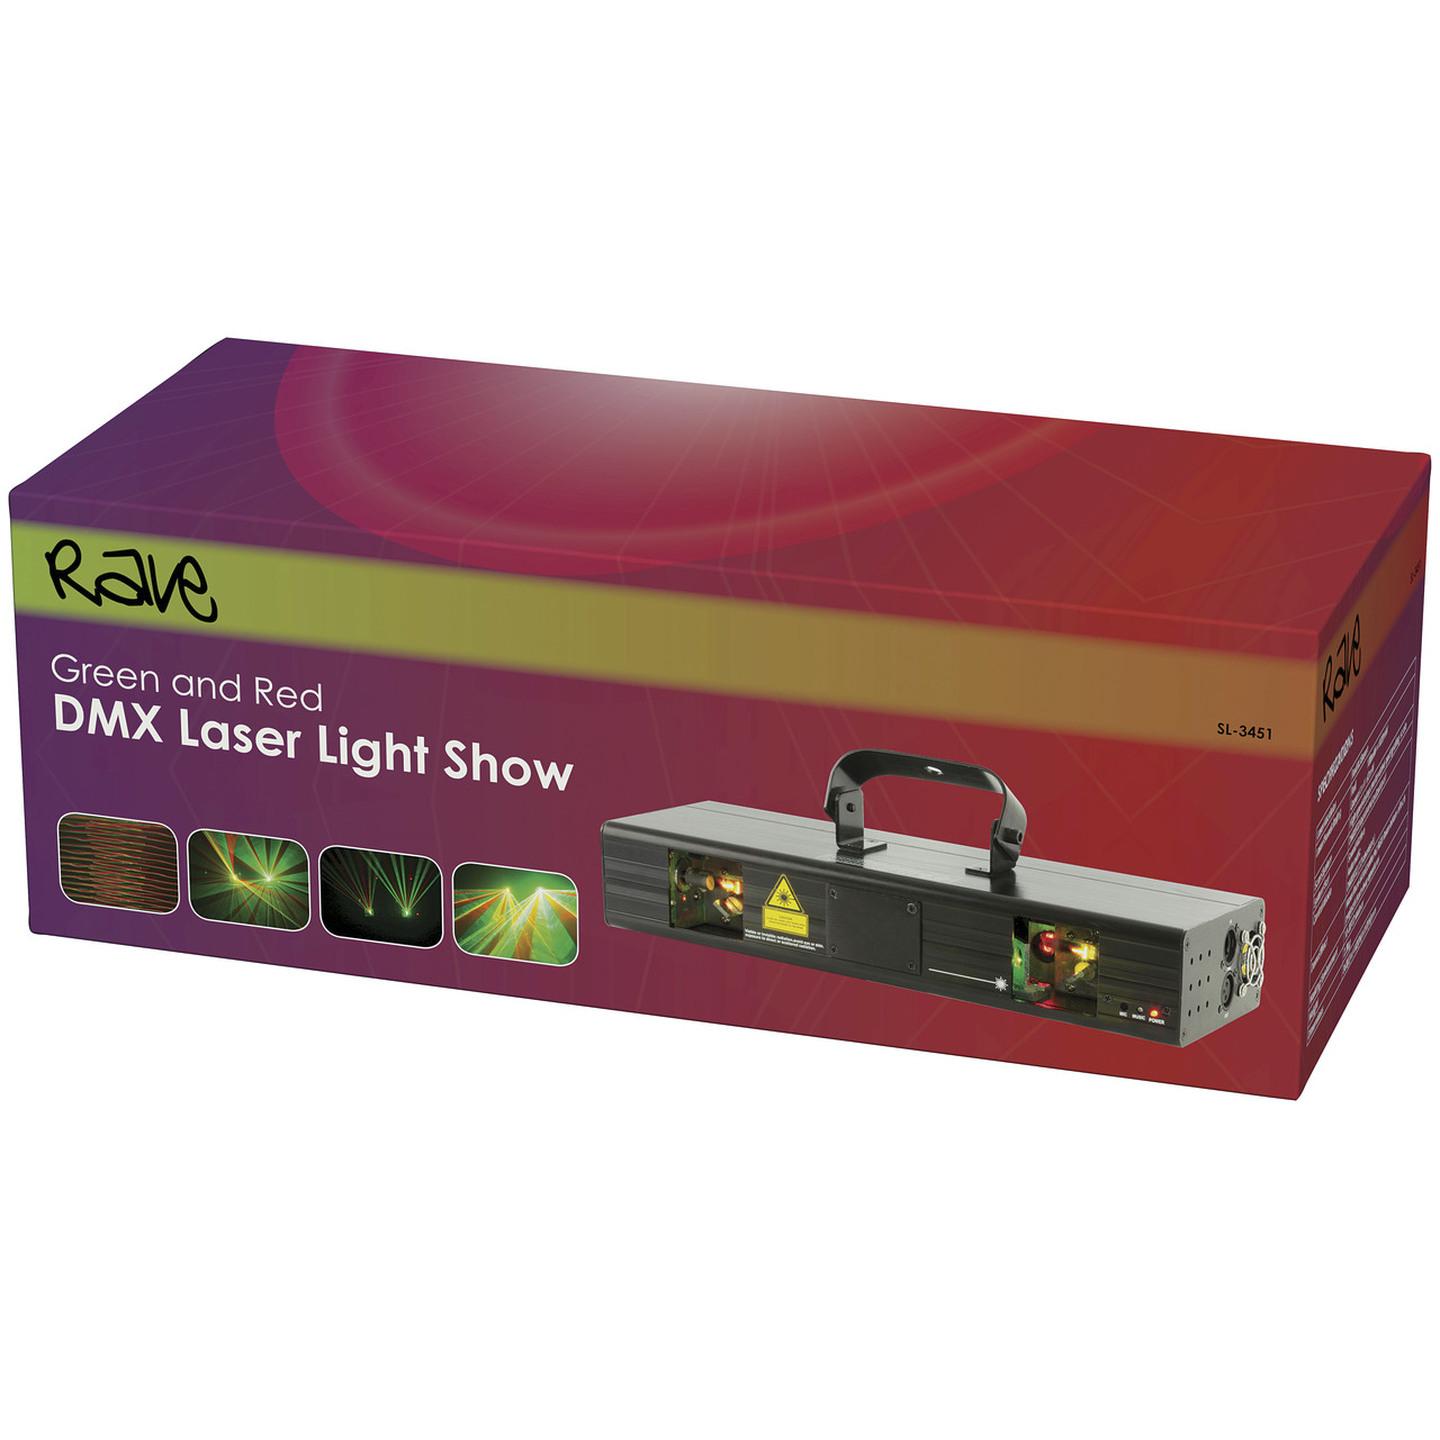 DMX Powered Laser Beam